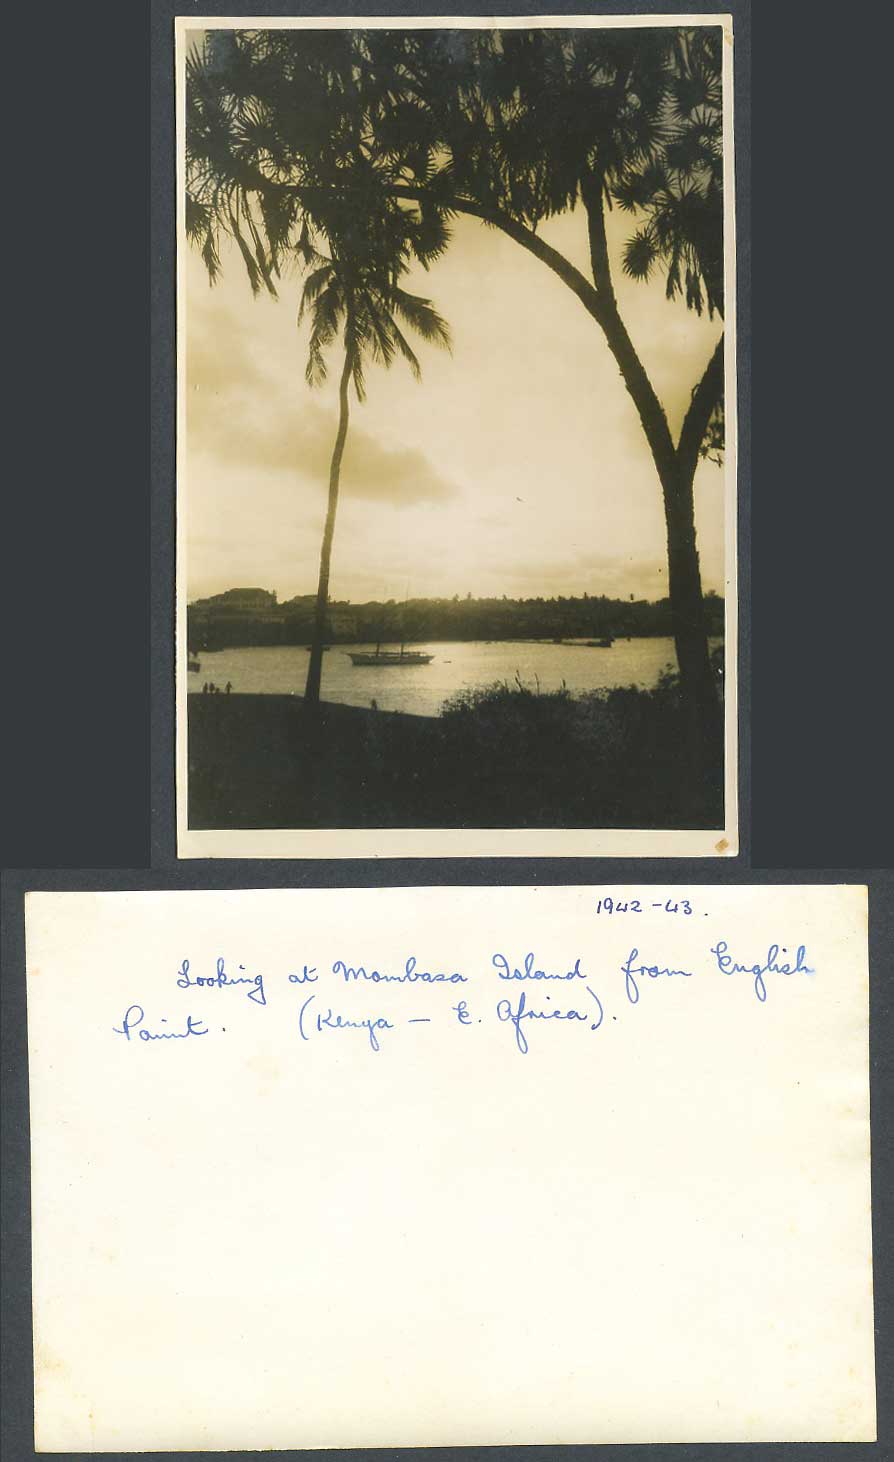 Kenya 1942 - 43 Old Real Photo Looking at Mombasa Island from English Point